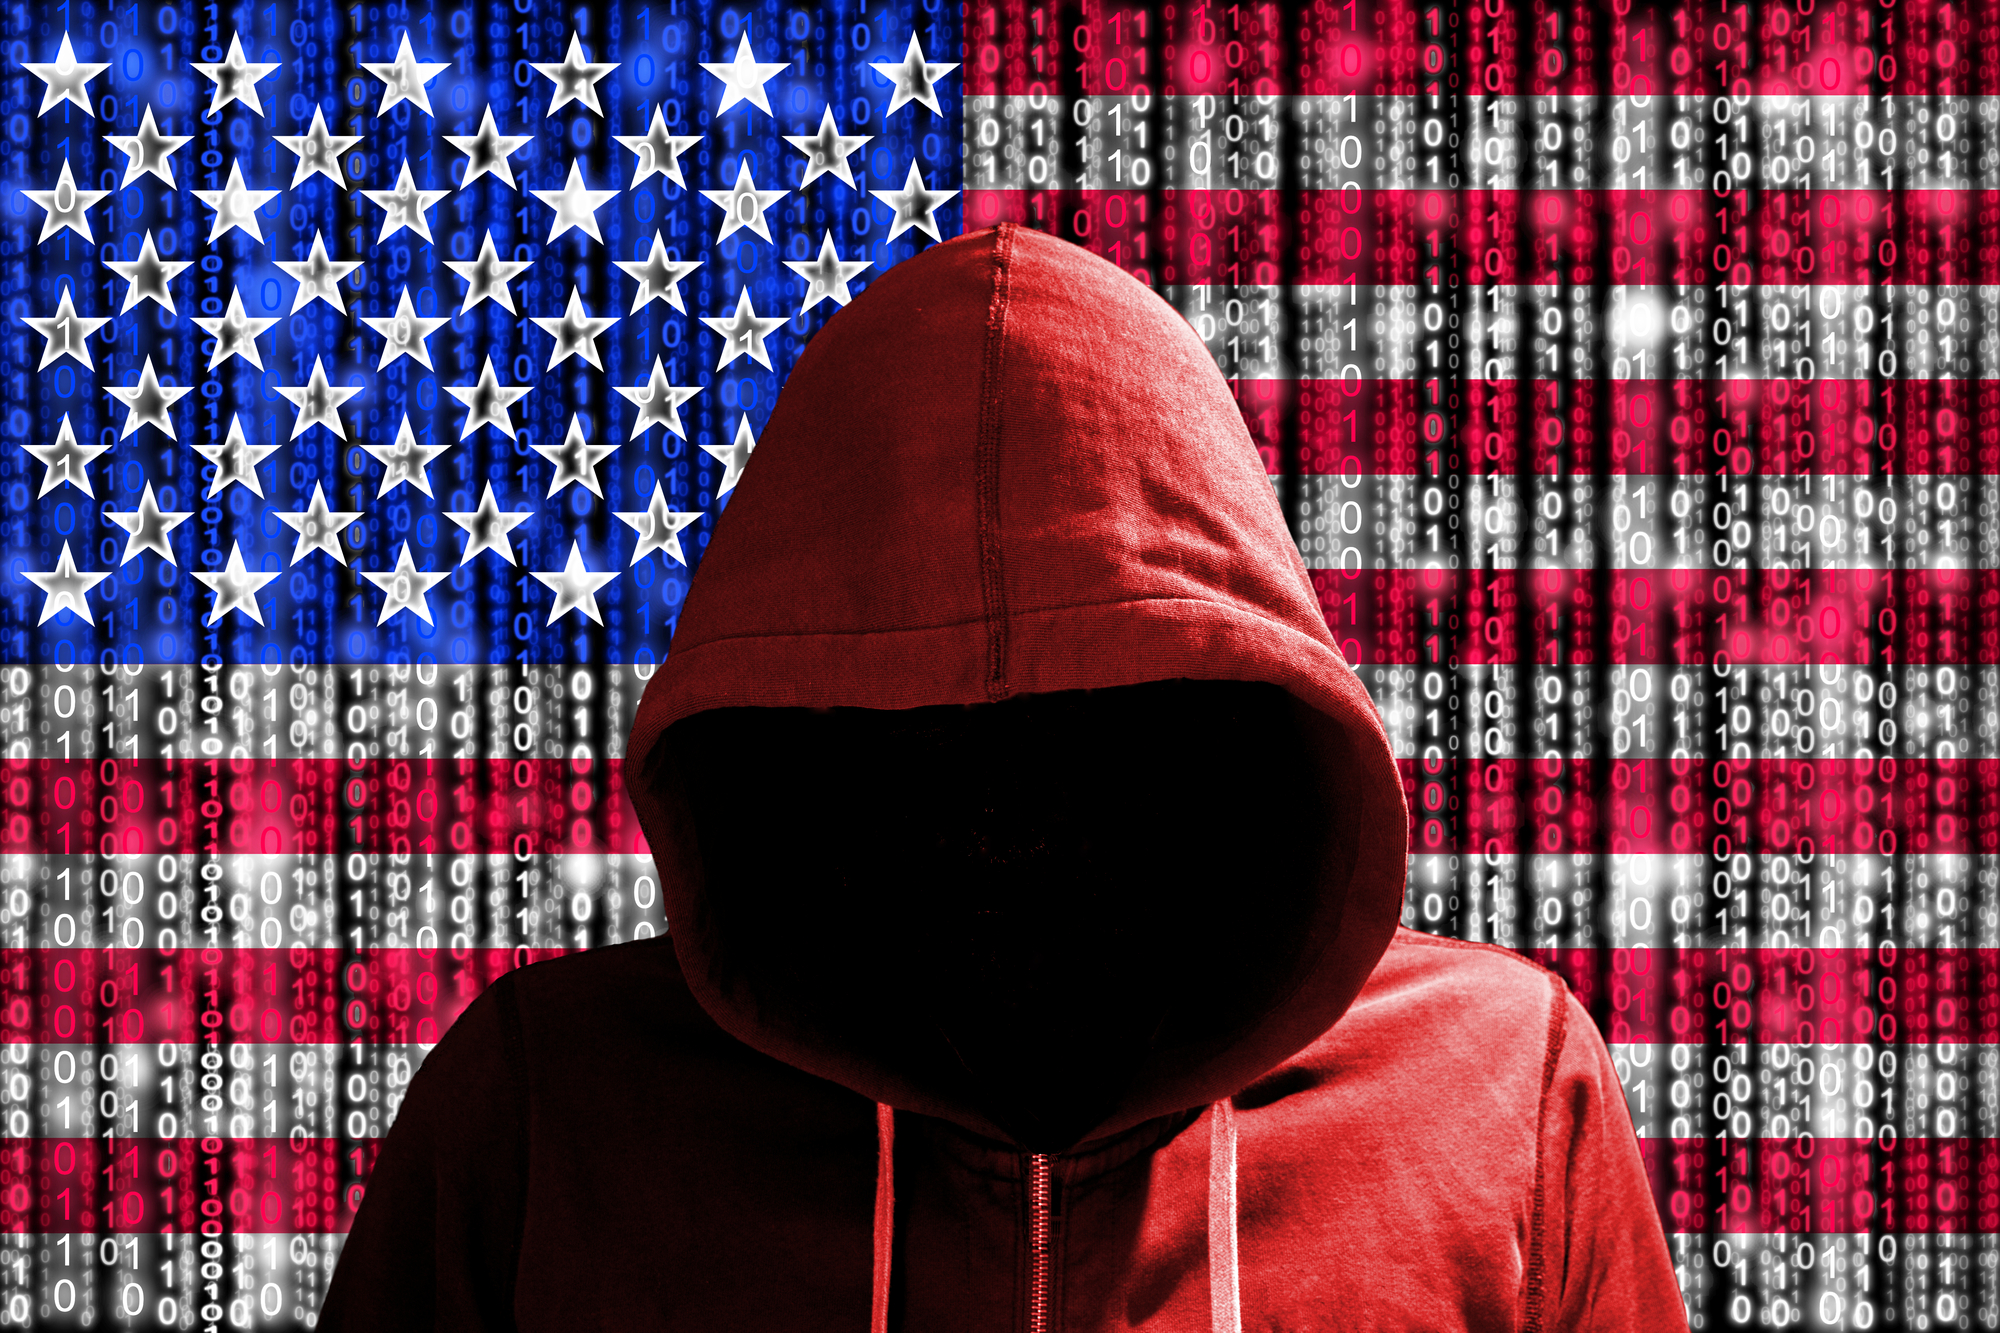 Ein Hacker vor einer amerikanischen Fahne mit digitalem Datenfluss